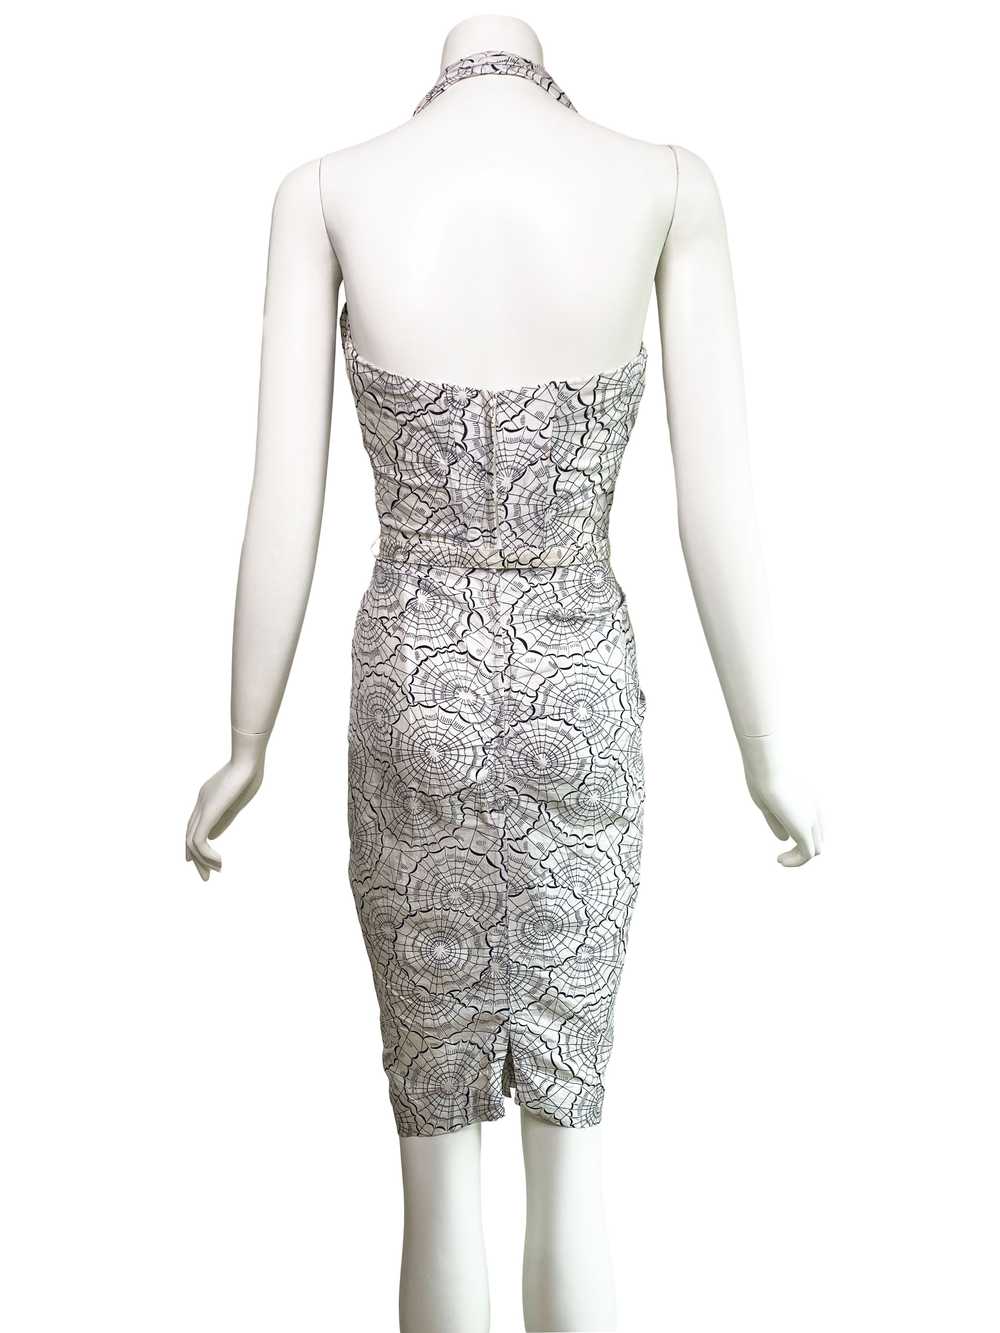 1950s Spiderweb Print Wiggle Dress - image 7